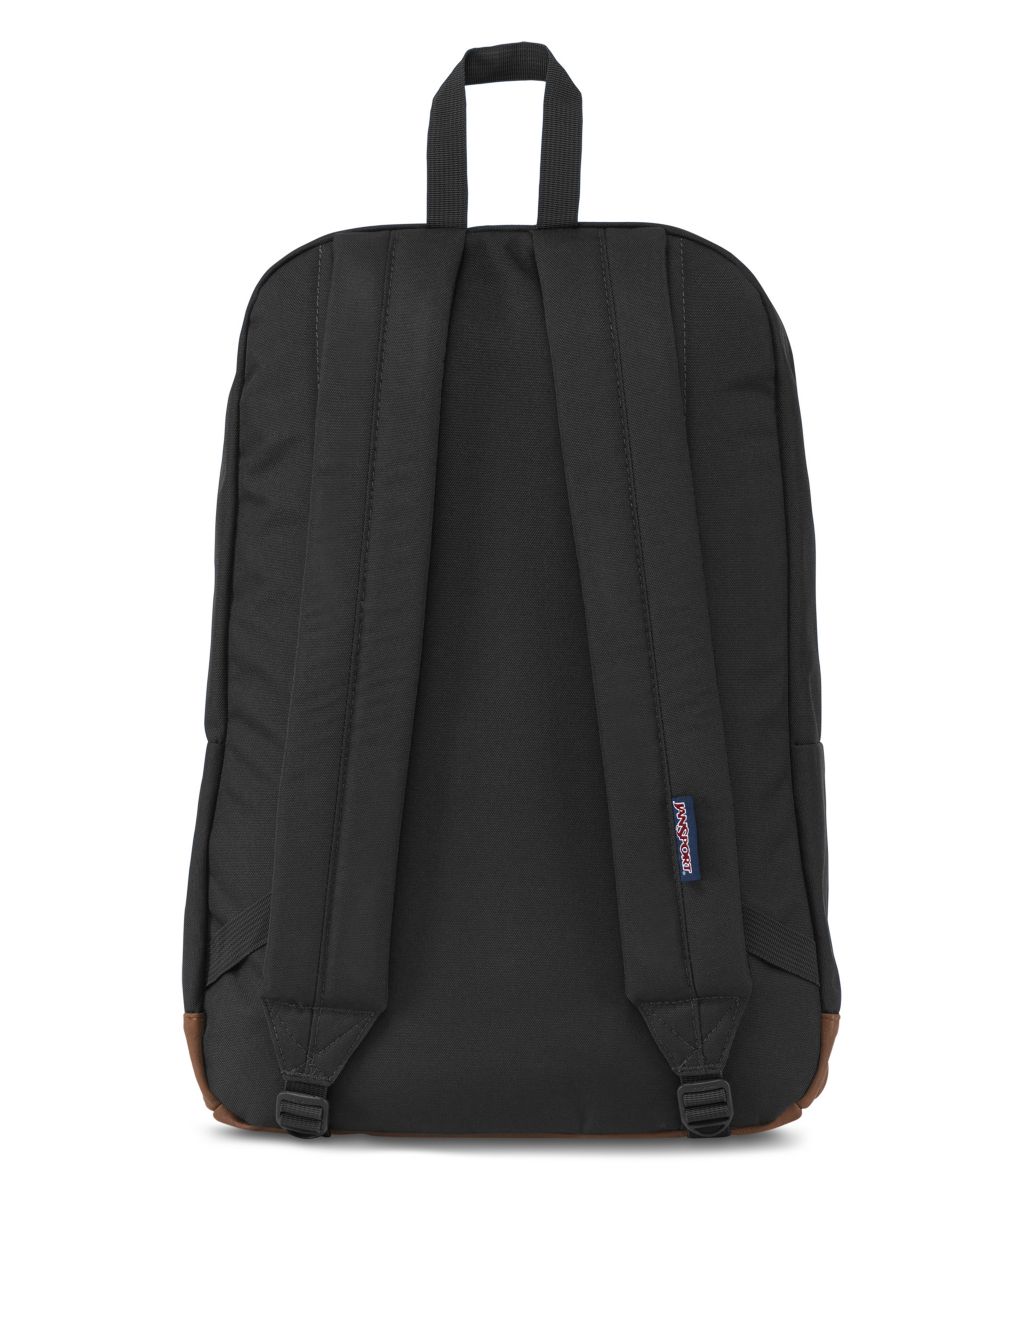 Cortlandt Multi Pocket Backpack image 4